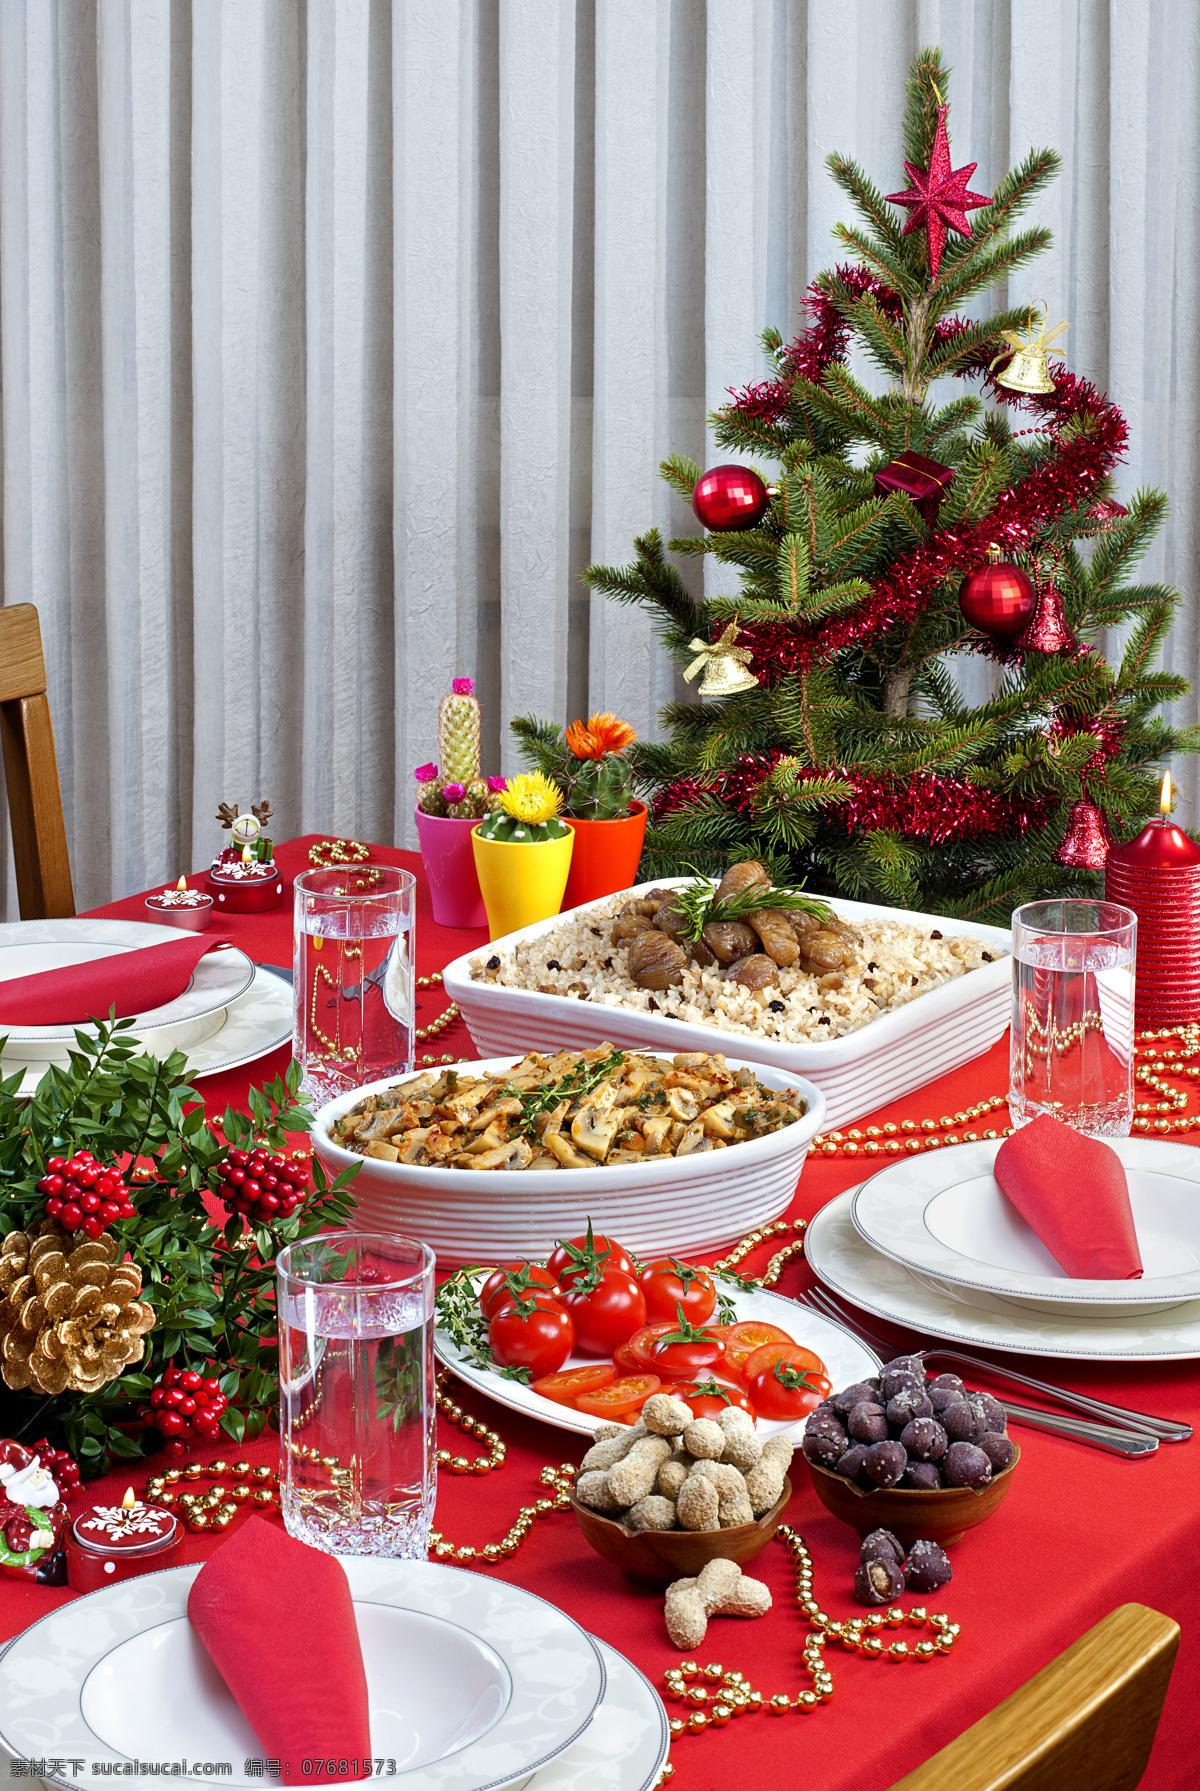 圣诞节 美食 圣诞树 圣诞节美食 花生 玻璃杯子 西红柿 番茄 圣诞节图片 生活百科